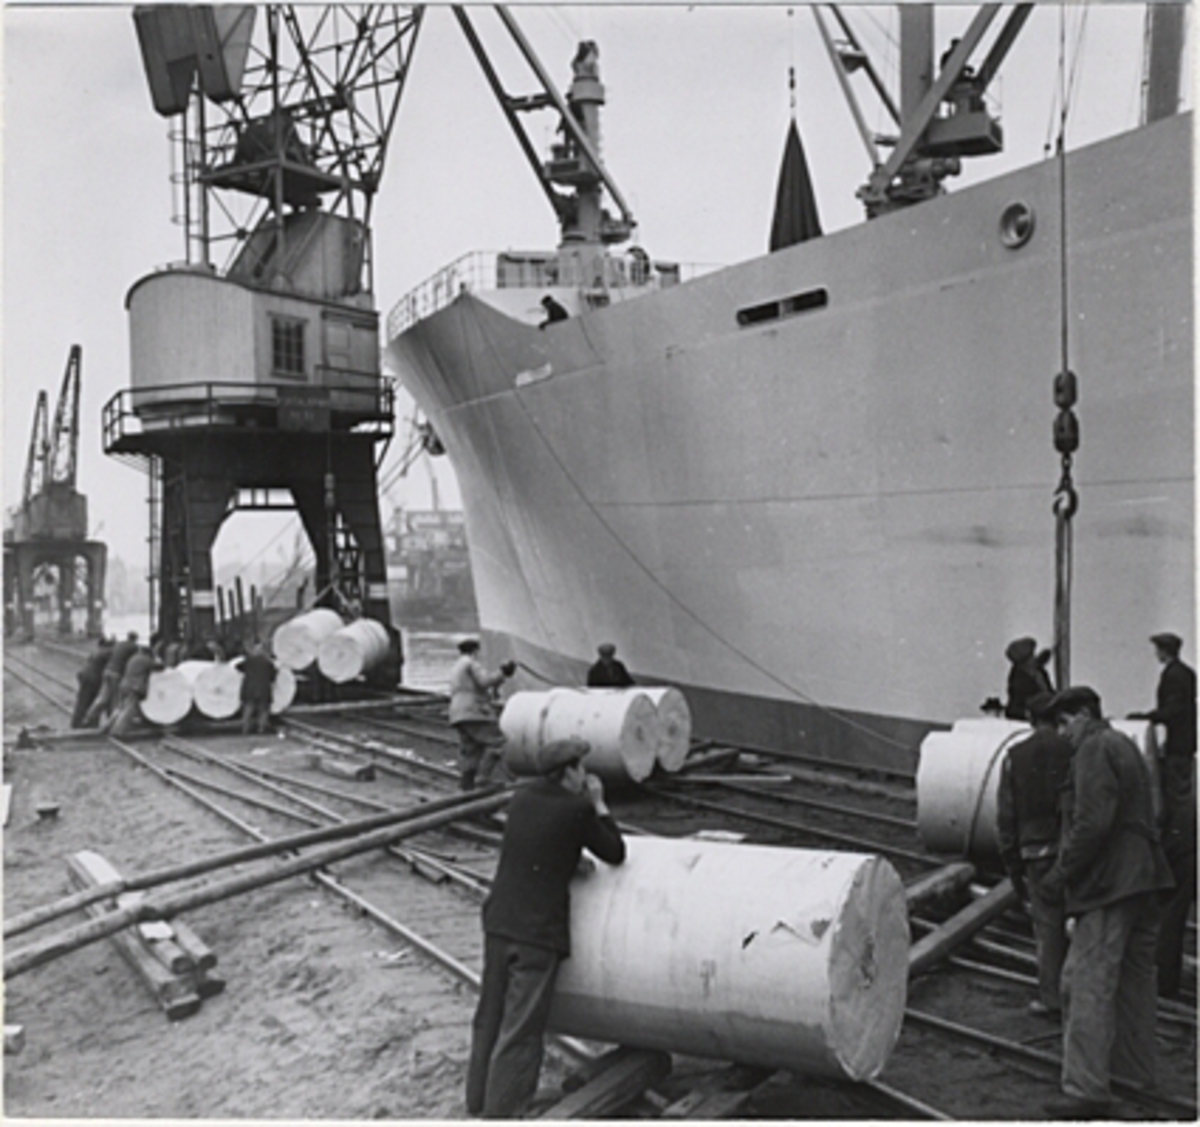 Lastning av papper i Norrköping november 1947. Pappersbalar rullas fram på kajen och lyfts ombord.